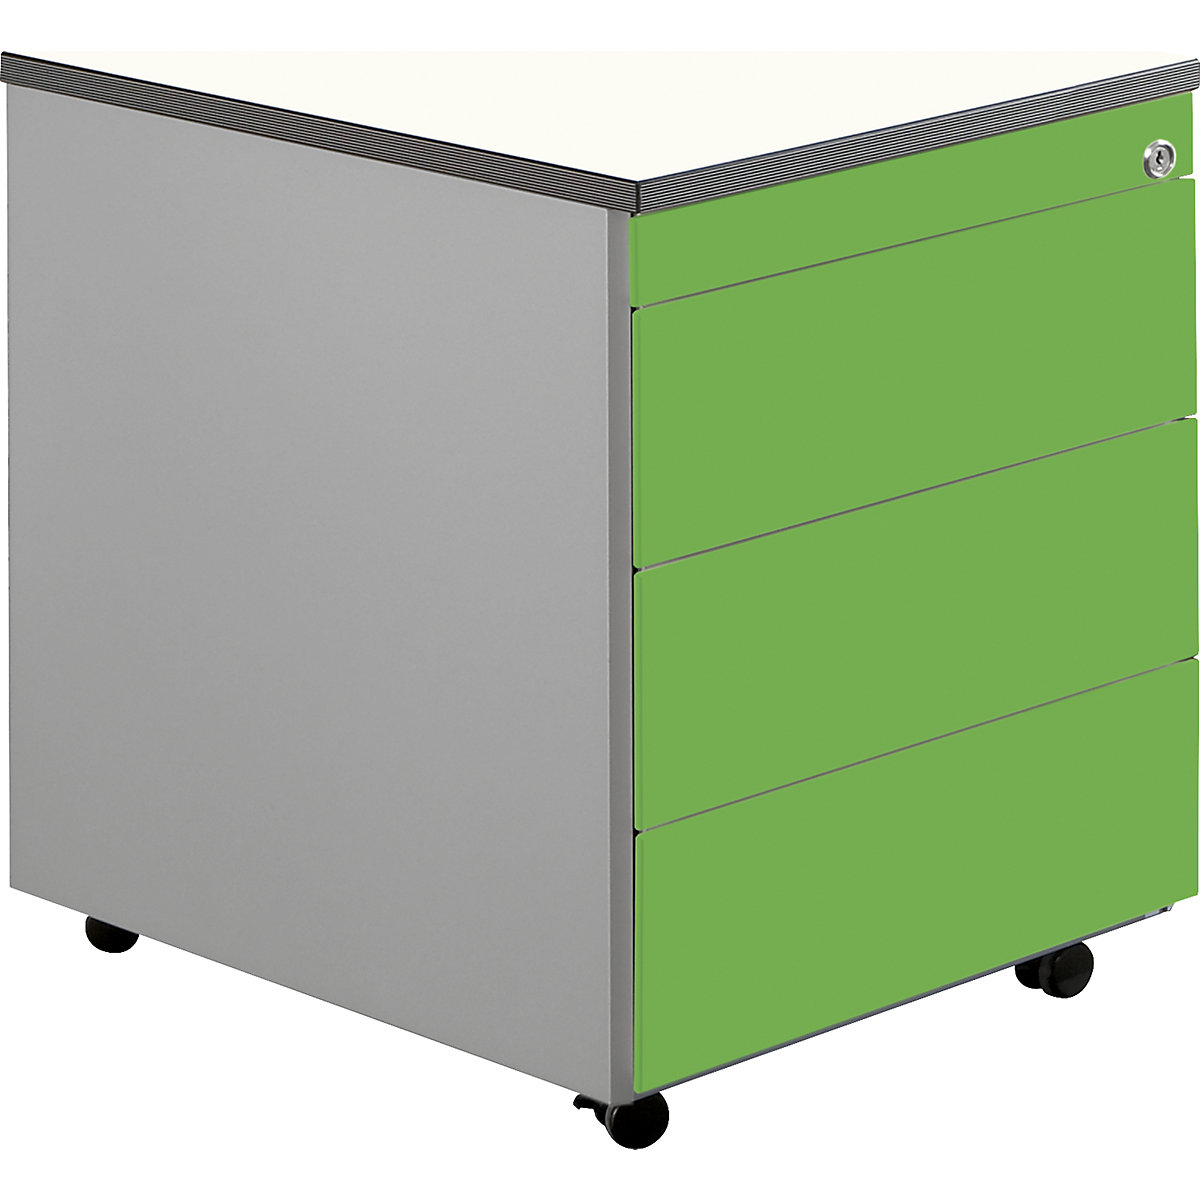 Casetieră cu sertare cu role – mauser, î. x ad. 579 x 600 mm, blat din plastic, 3 sertare, alb aluminiu / verde gălbui / alb